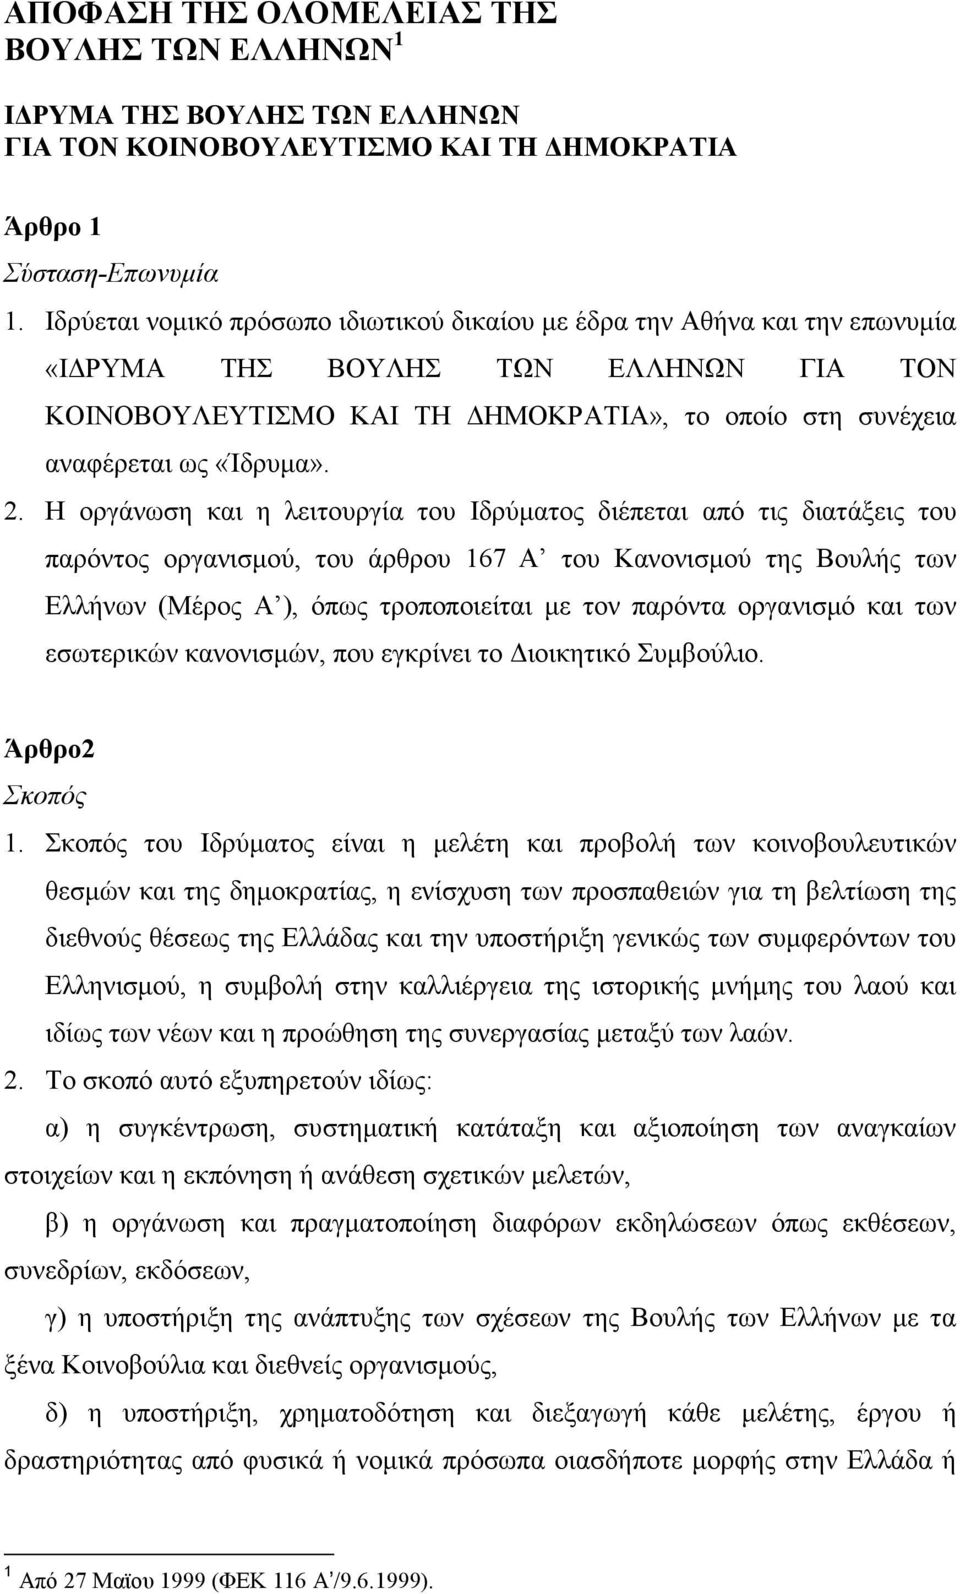 Η οργάνωση και η λειτουργία του Ιδρύµατος διέπεται από τις διατάξεις του παρόντος οργανισµού, του άρθρου 167 Α του Κανονισµού της Βουλής των Ελλήνων (Μέρος Α ), όπως τροποποιείται µε τον παρόντα